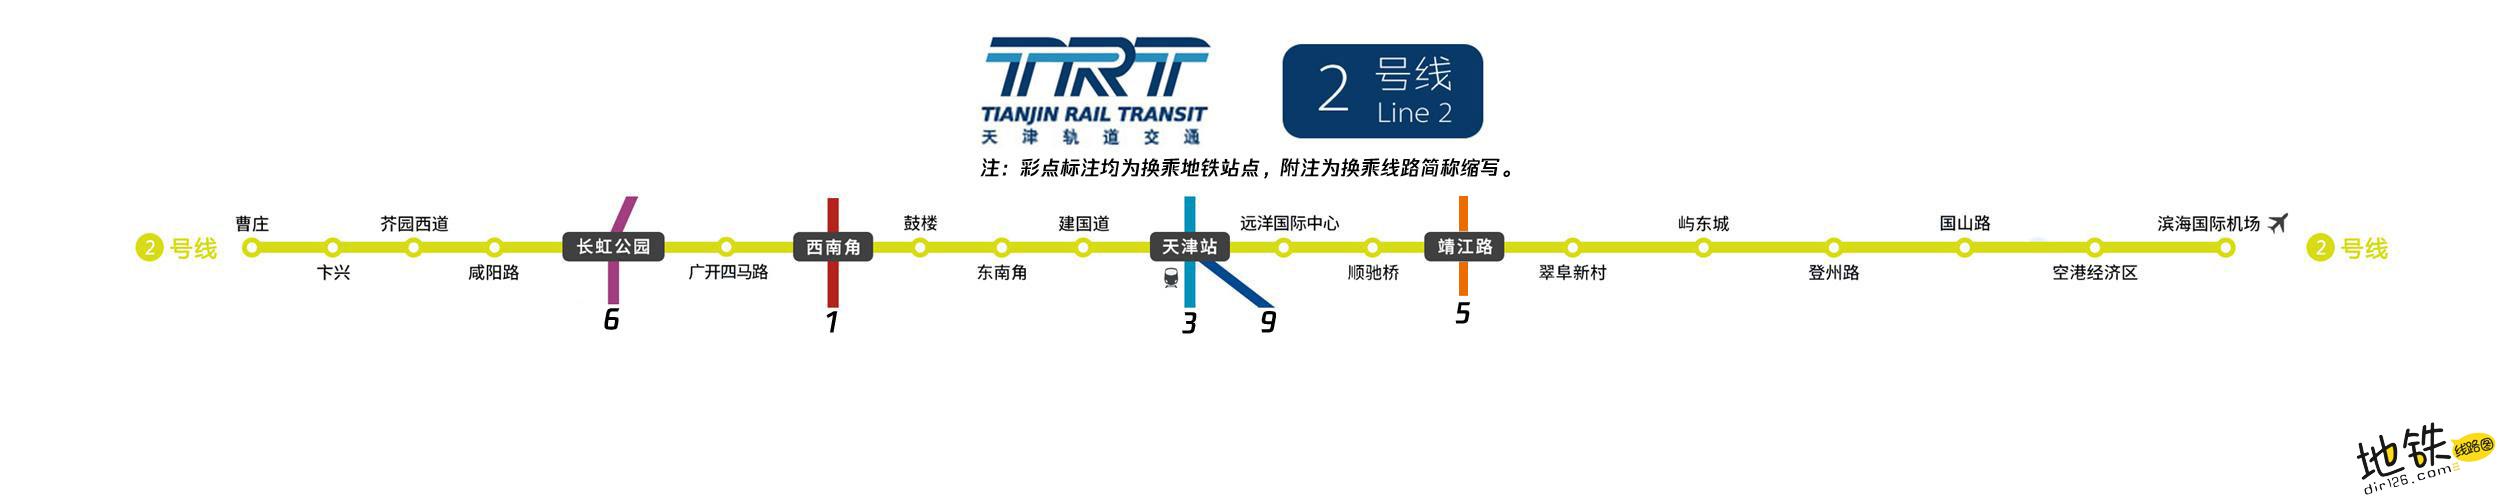 天津地铁二号线线路图图片